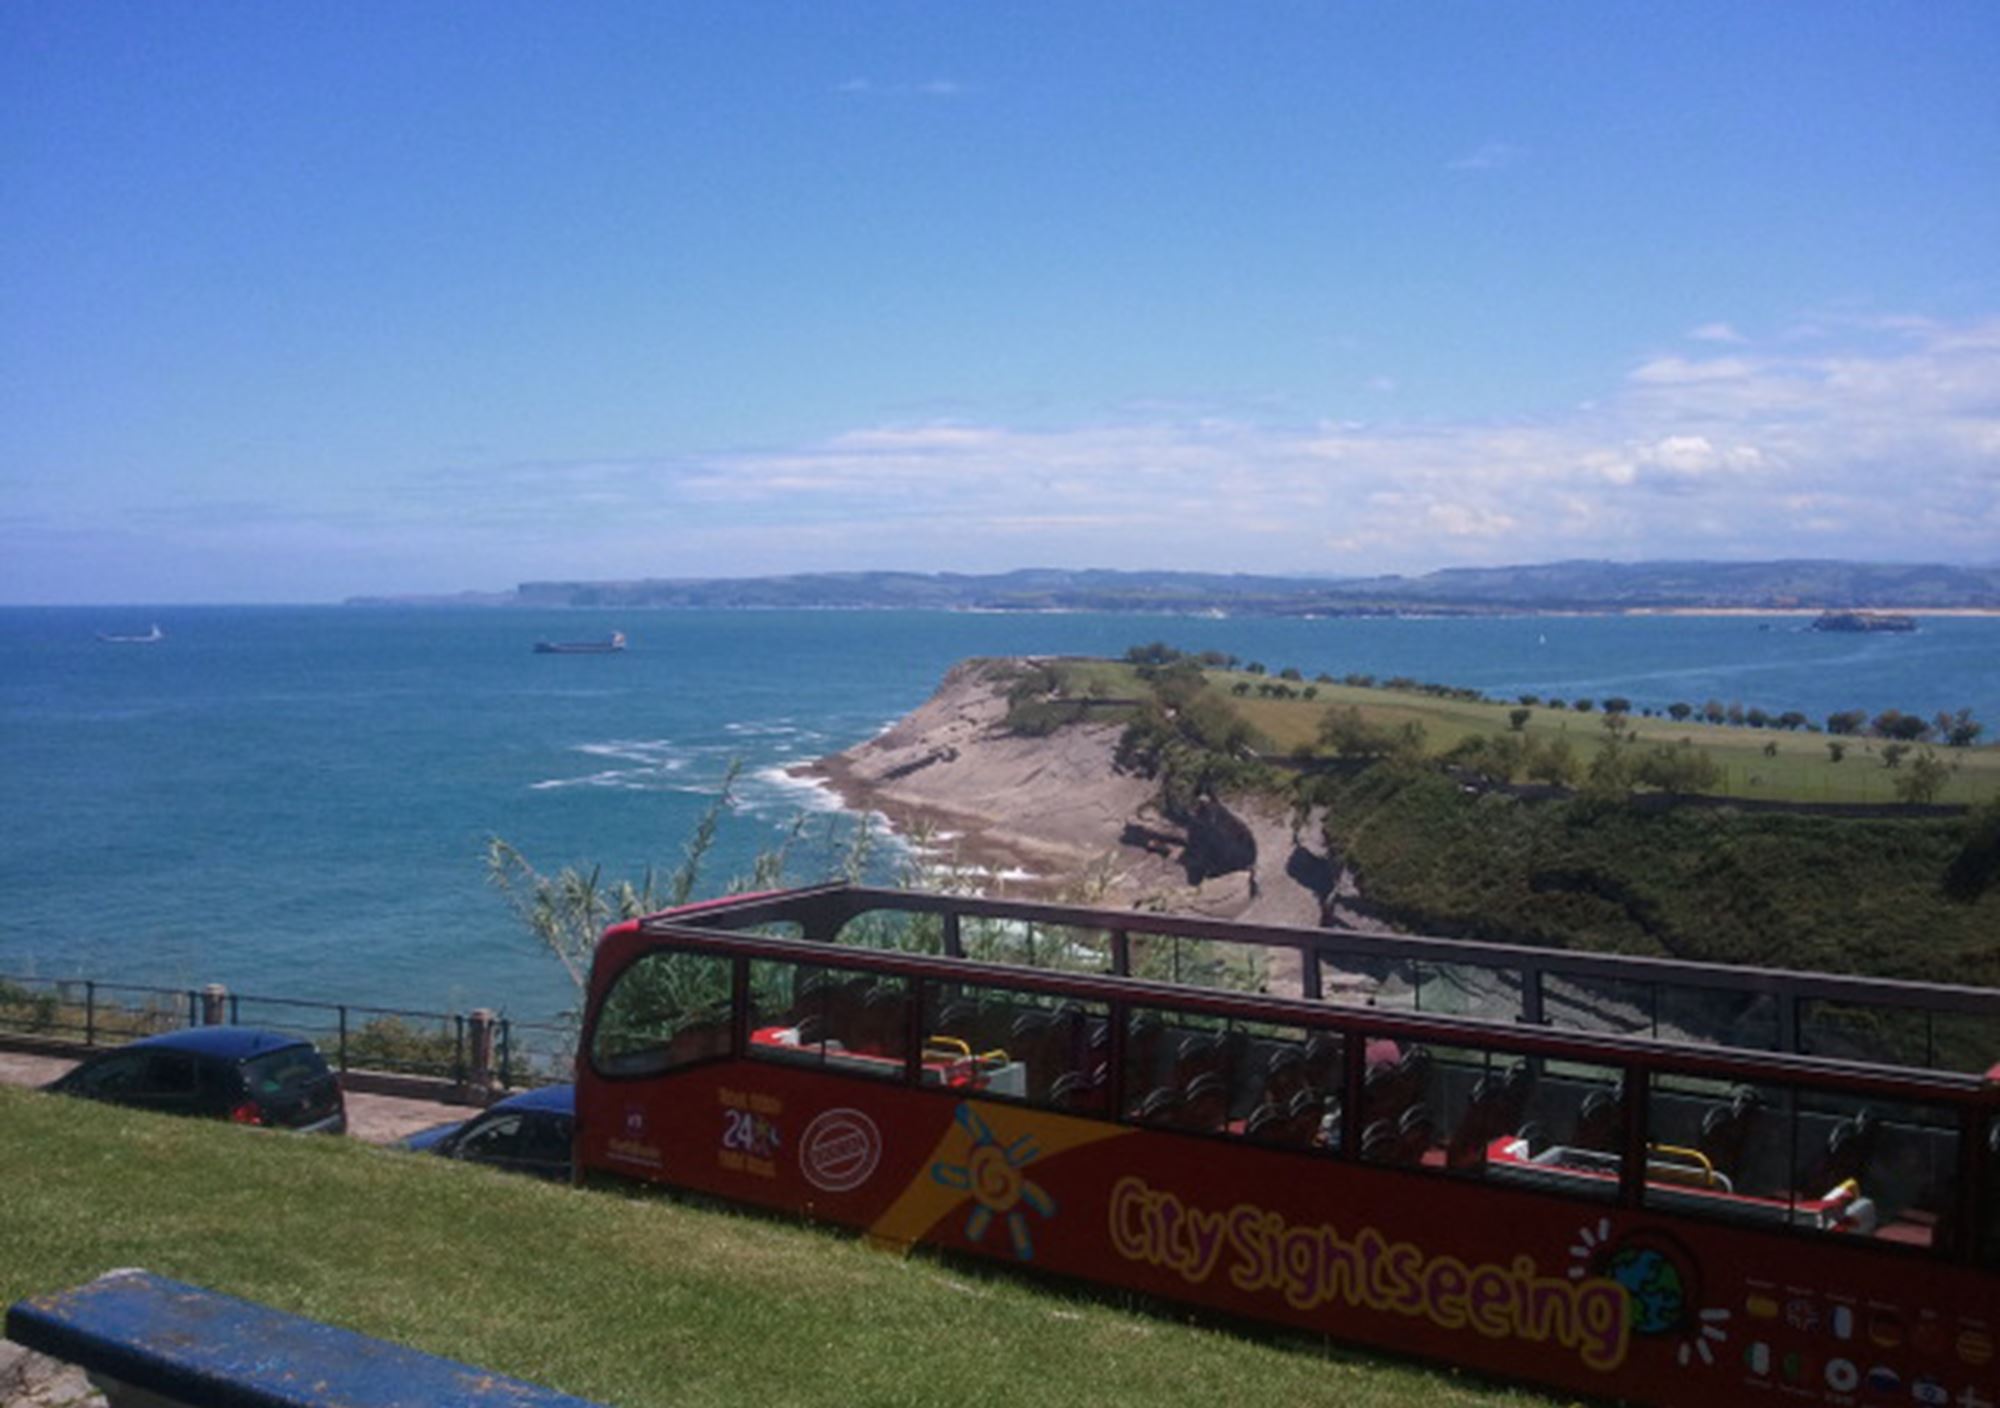 réserver guidées tours Bus Touristique City Sightseeing Santander billets visiter